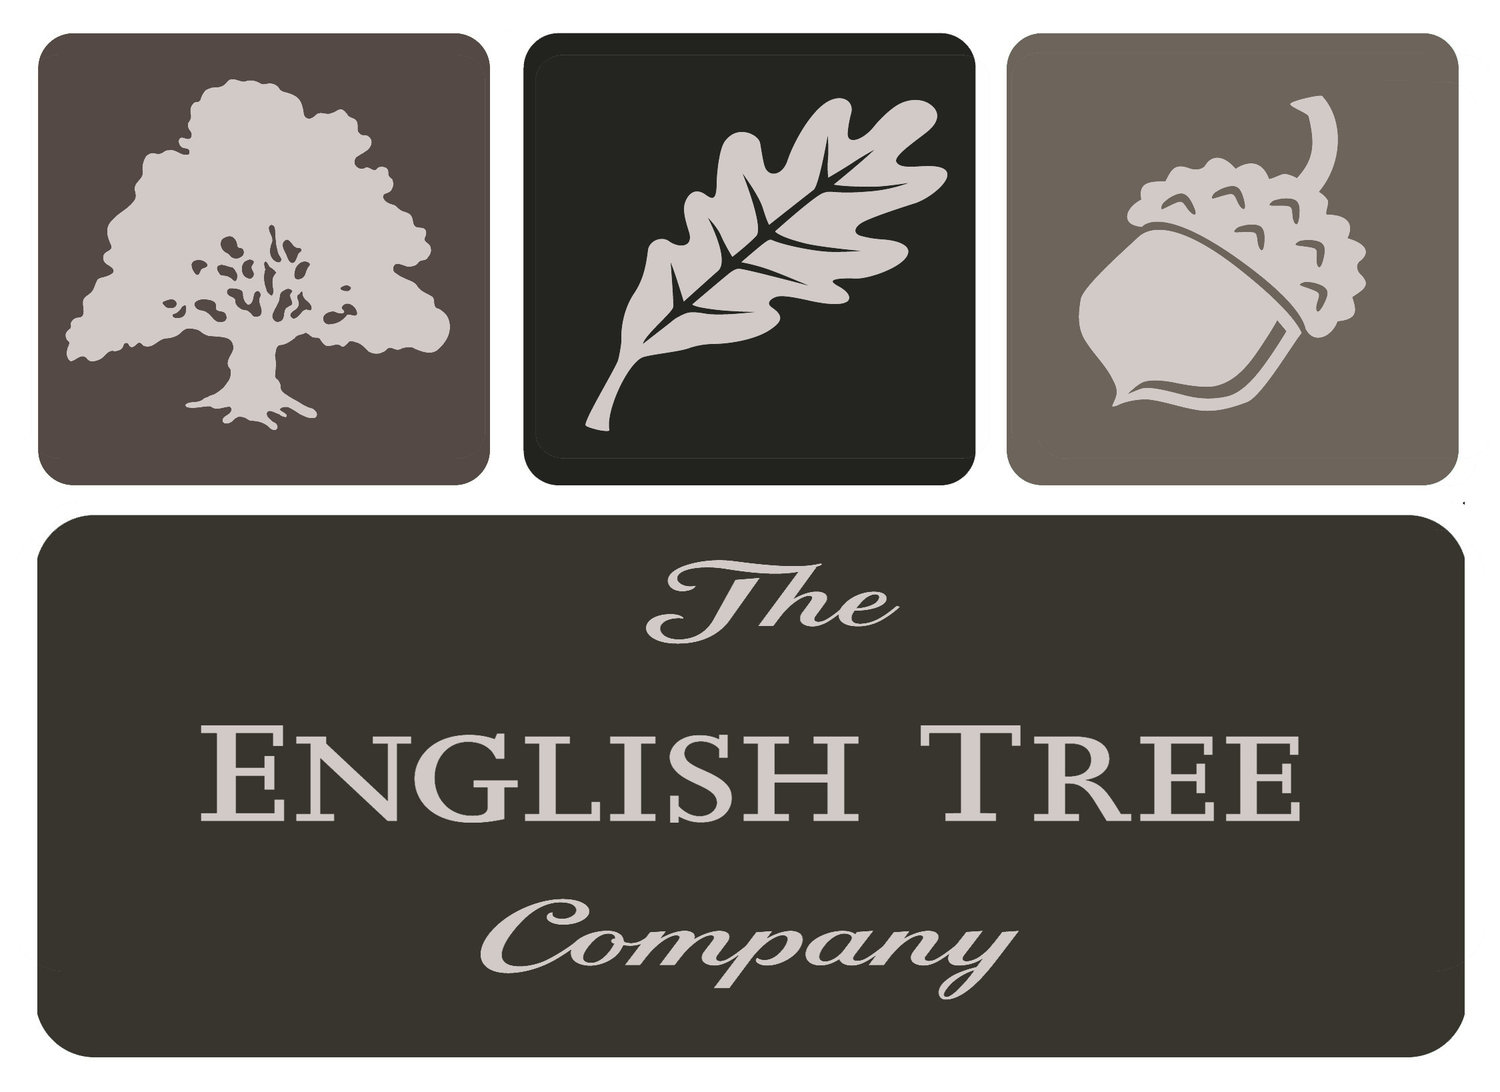 THE ENGLISH TREE COMPANY